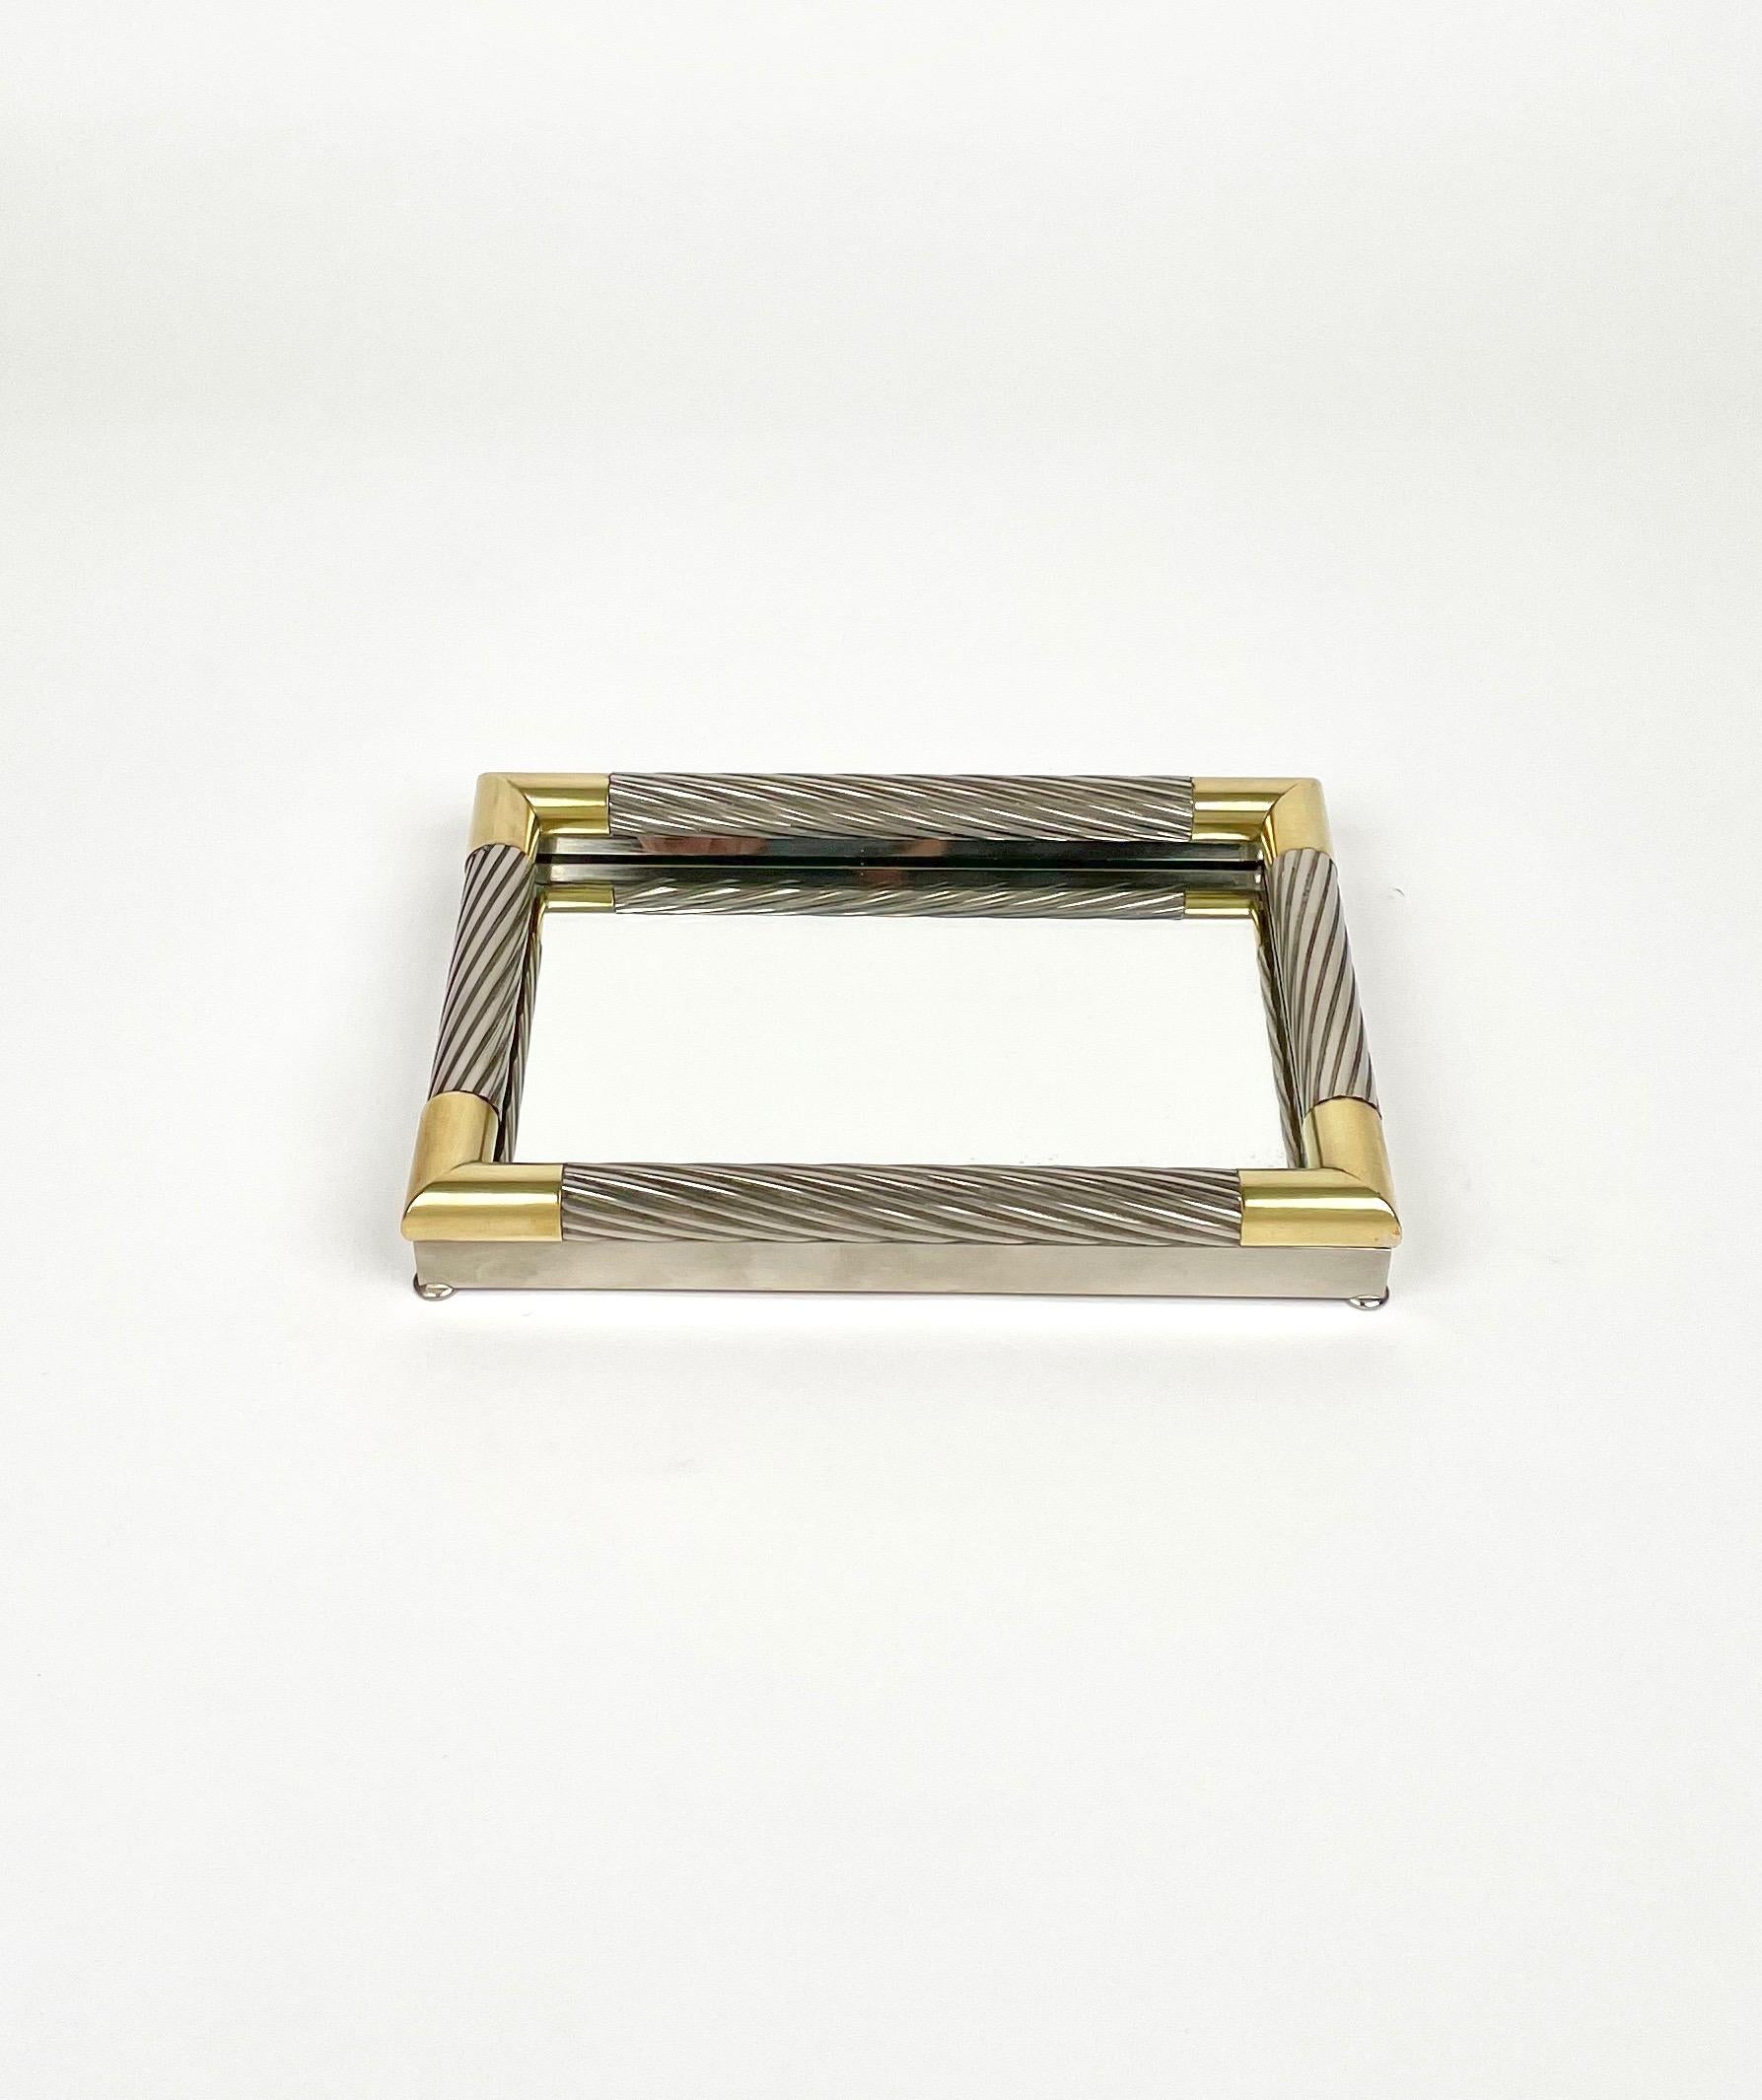 Centre de table rectangulaire Vide-Poche en métal argenté, miroir et coins en laiton du designer italien Tommaso Barbi. 

Fabriqué en Italie dans les années 1970.